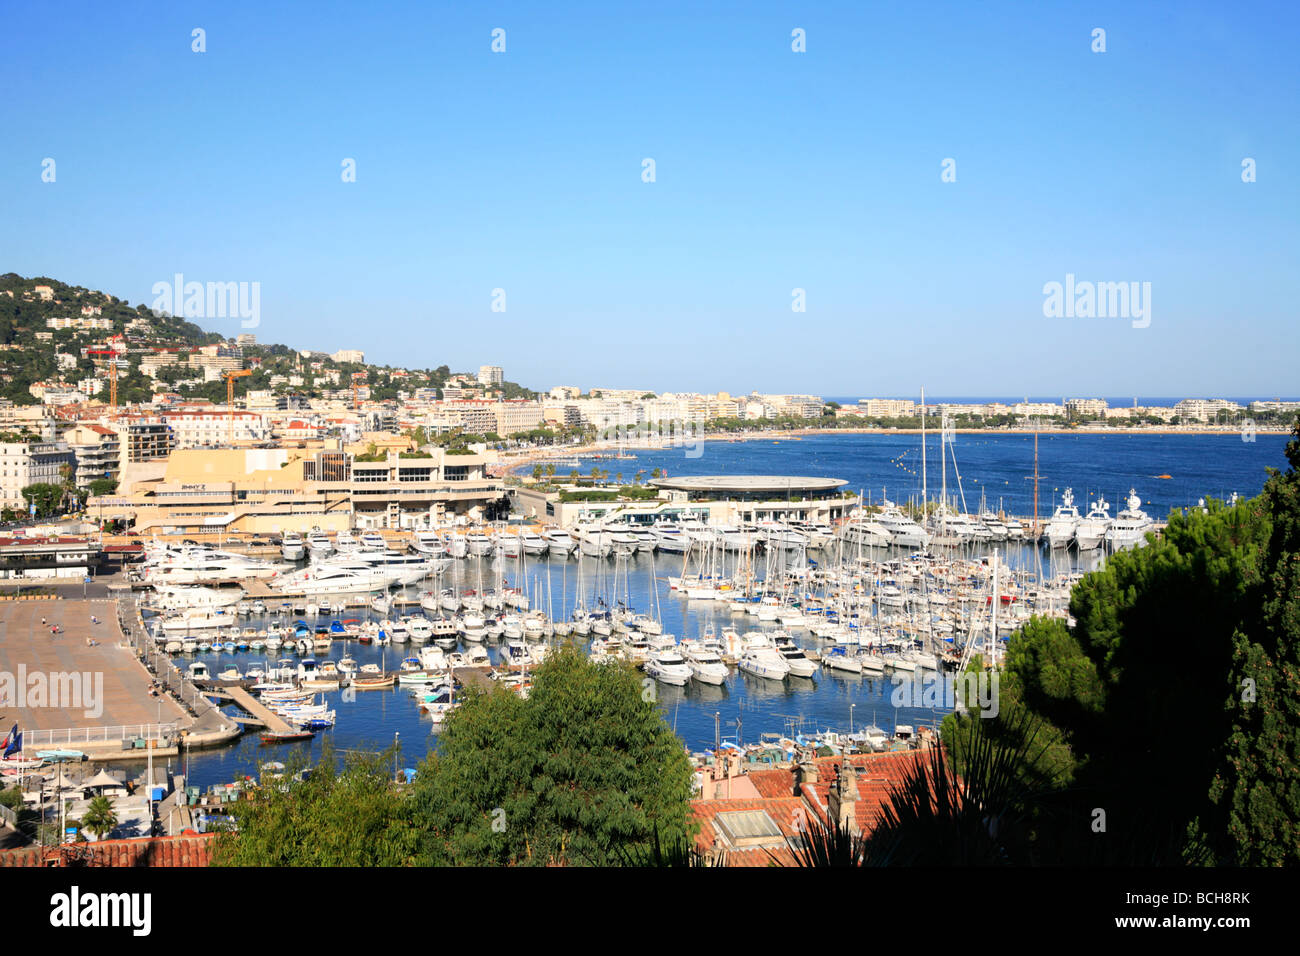 Old Harbour and Palais de Festivals venue for the Cannes Film Festival Stock Photo